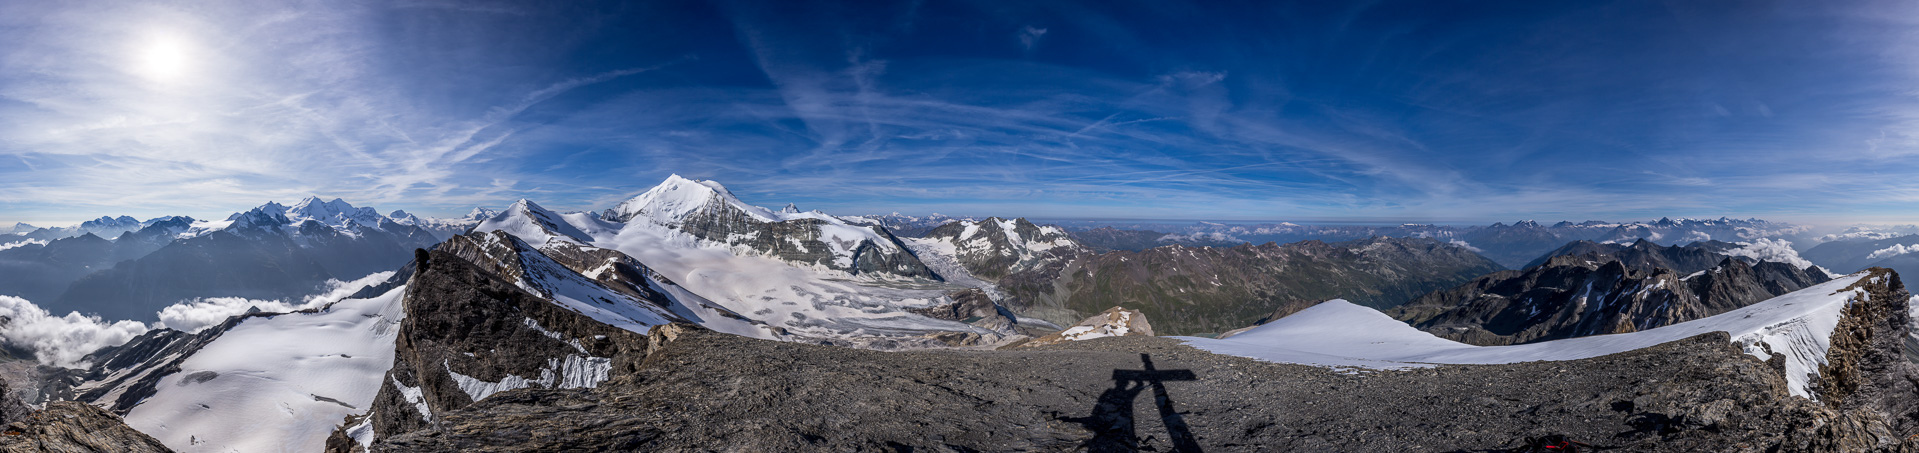 Höchster Wandergipfel der Schweiz - mit einem exquisiten Panorama auf fast alle wichtigen 4000er der Walliser und Berner Alpen.